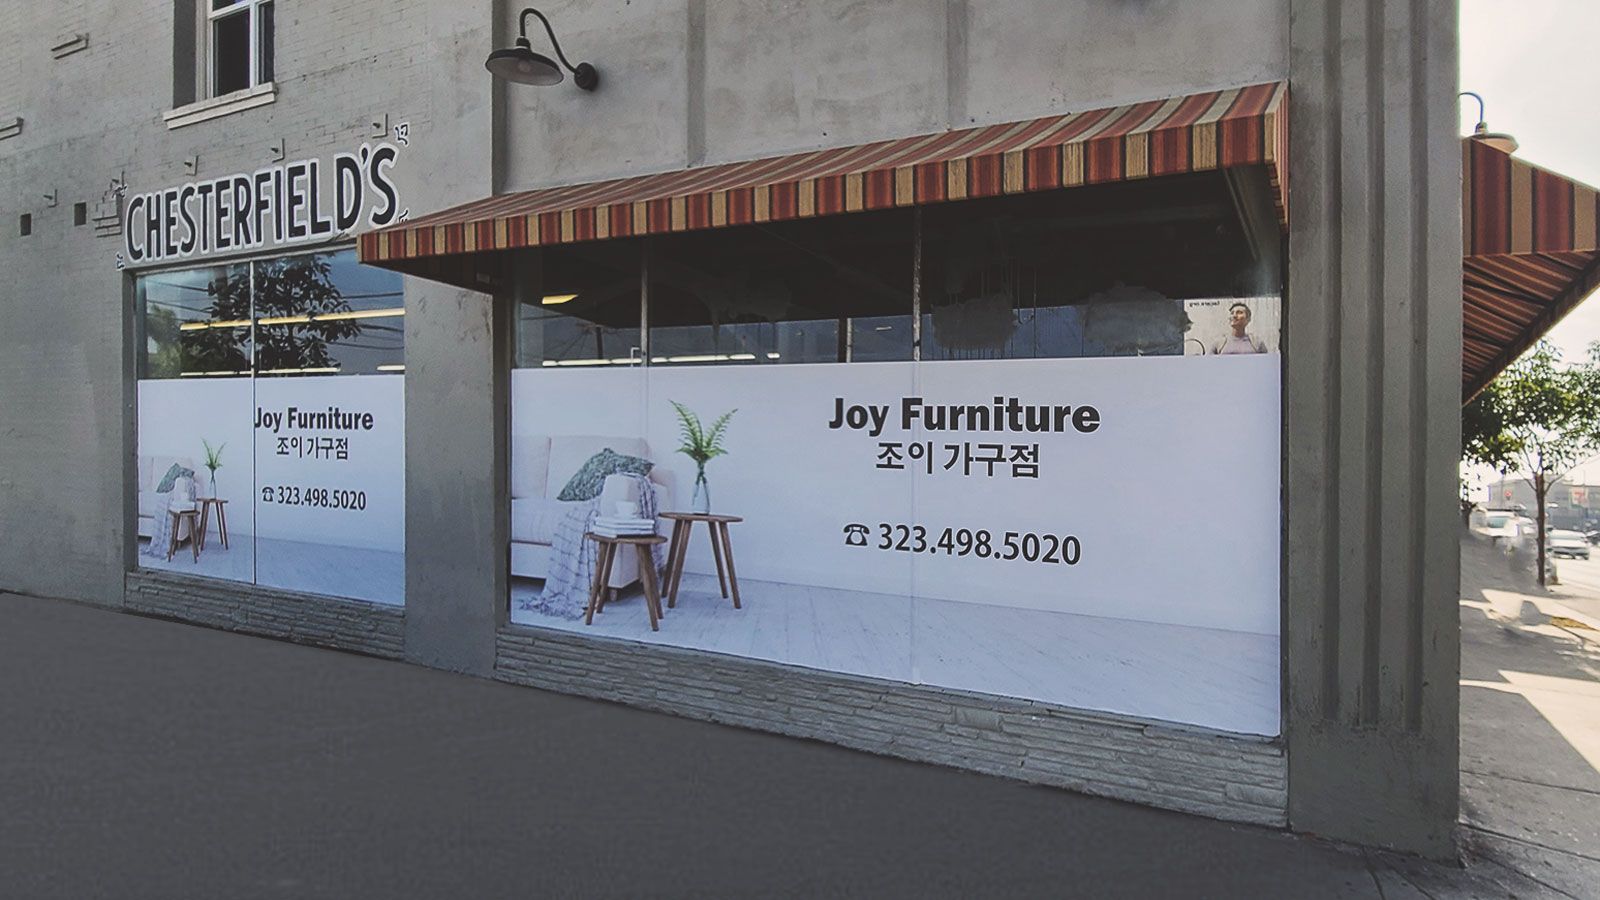 joy furniture window decals